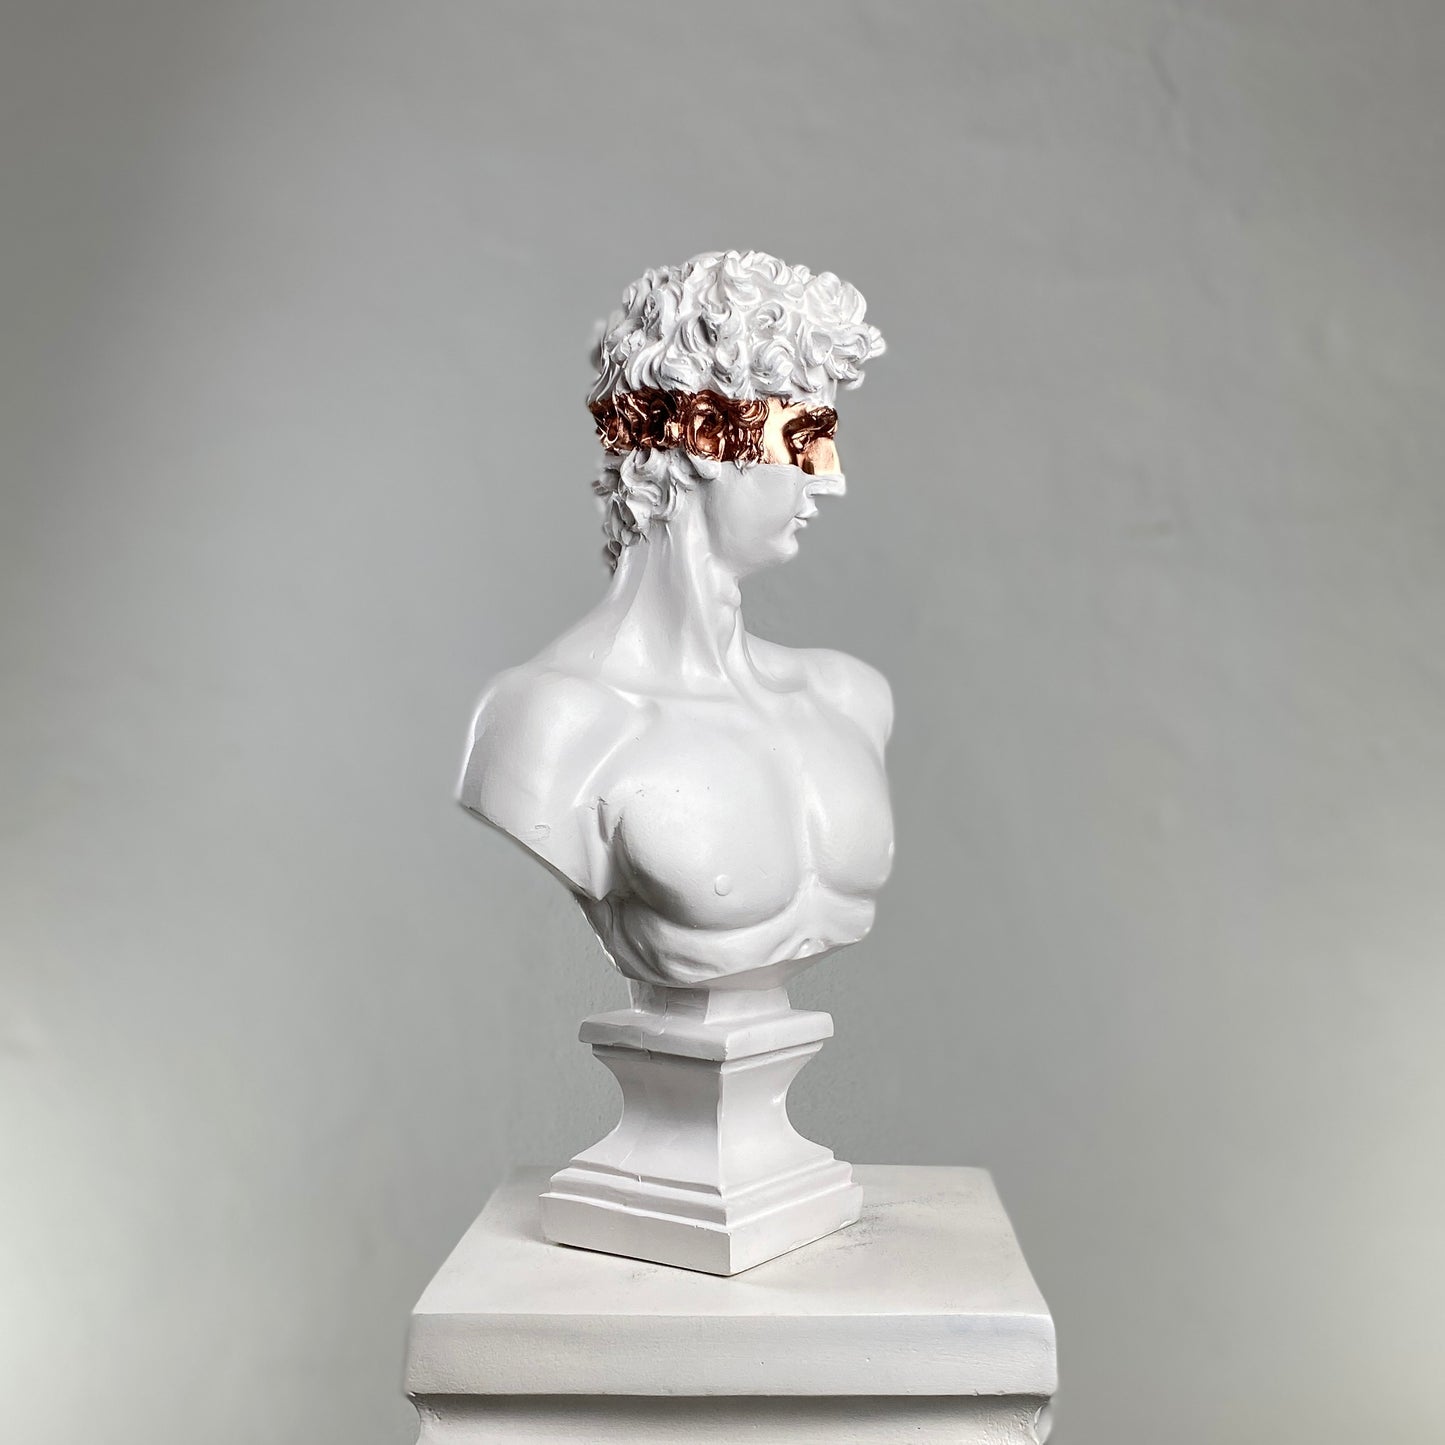 David 'Bronze Eyes' Pop Art Sculpture, Modern Home Decor, Large Sculpture